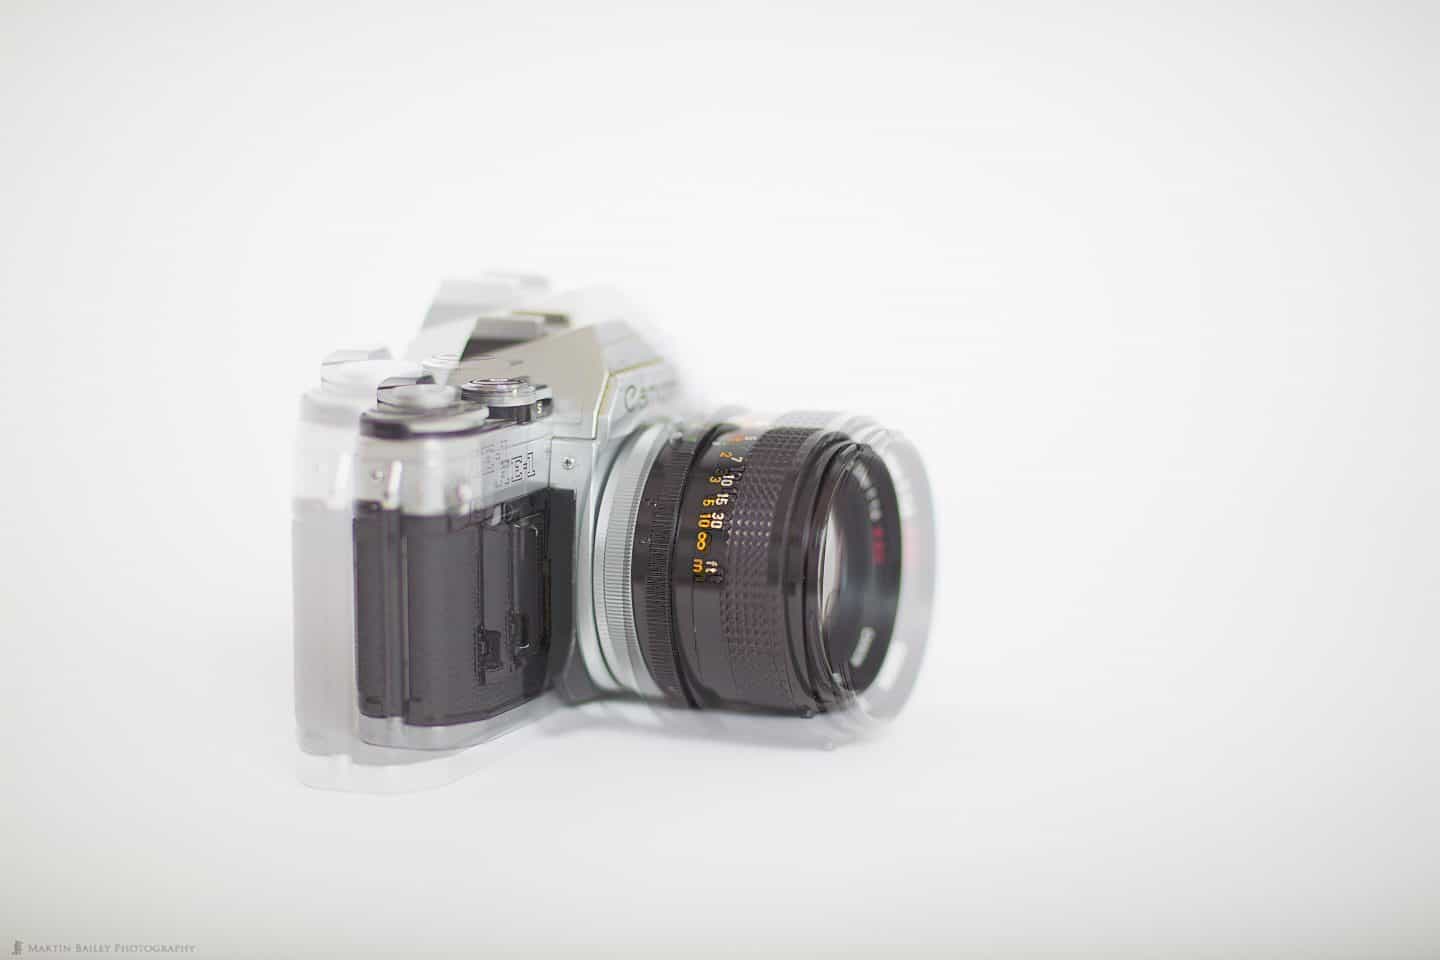 85mm Minimum Focus Distance (f/1.2 Opaque - f/1.4 Transparent)